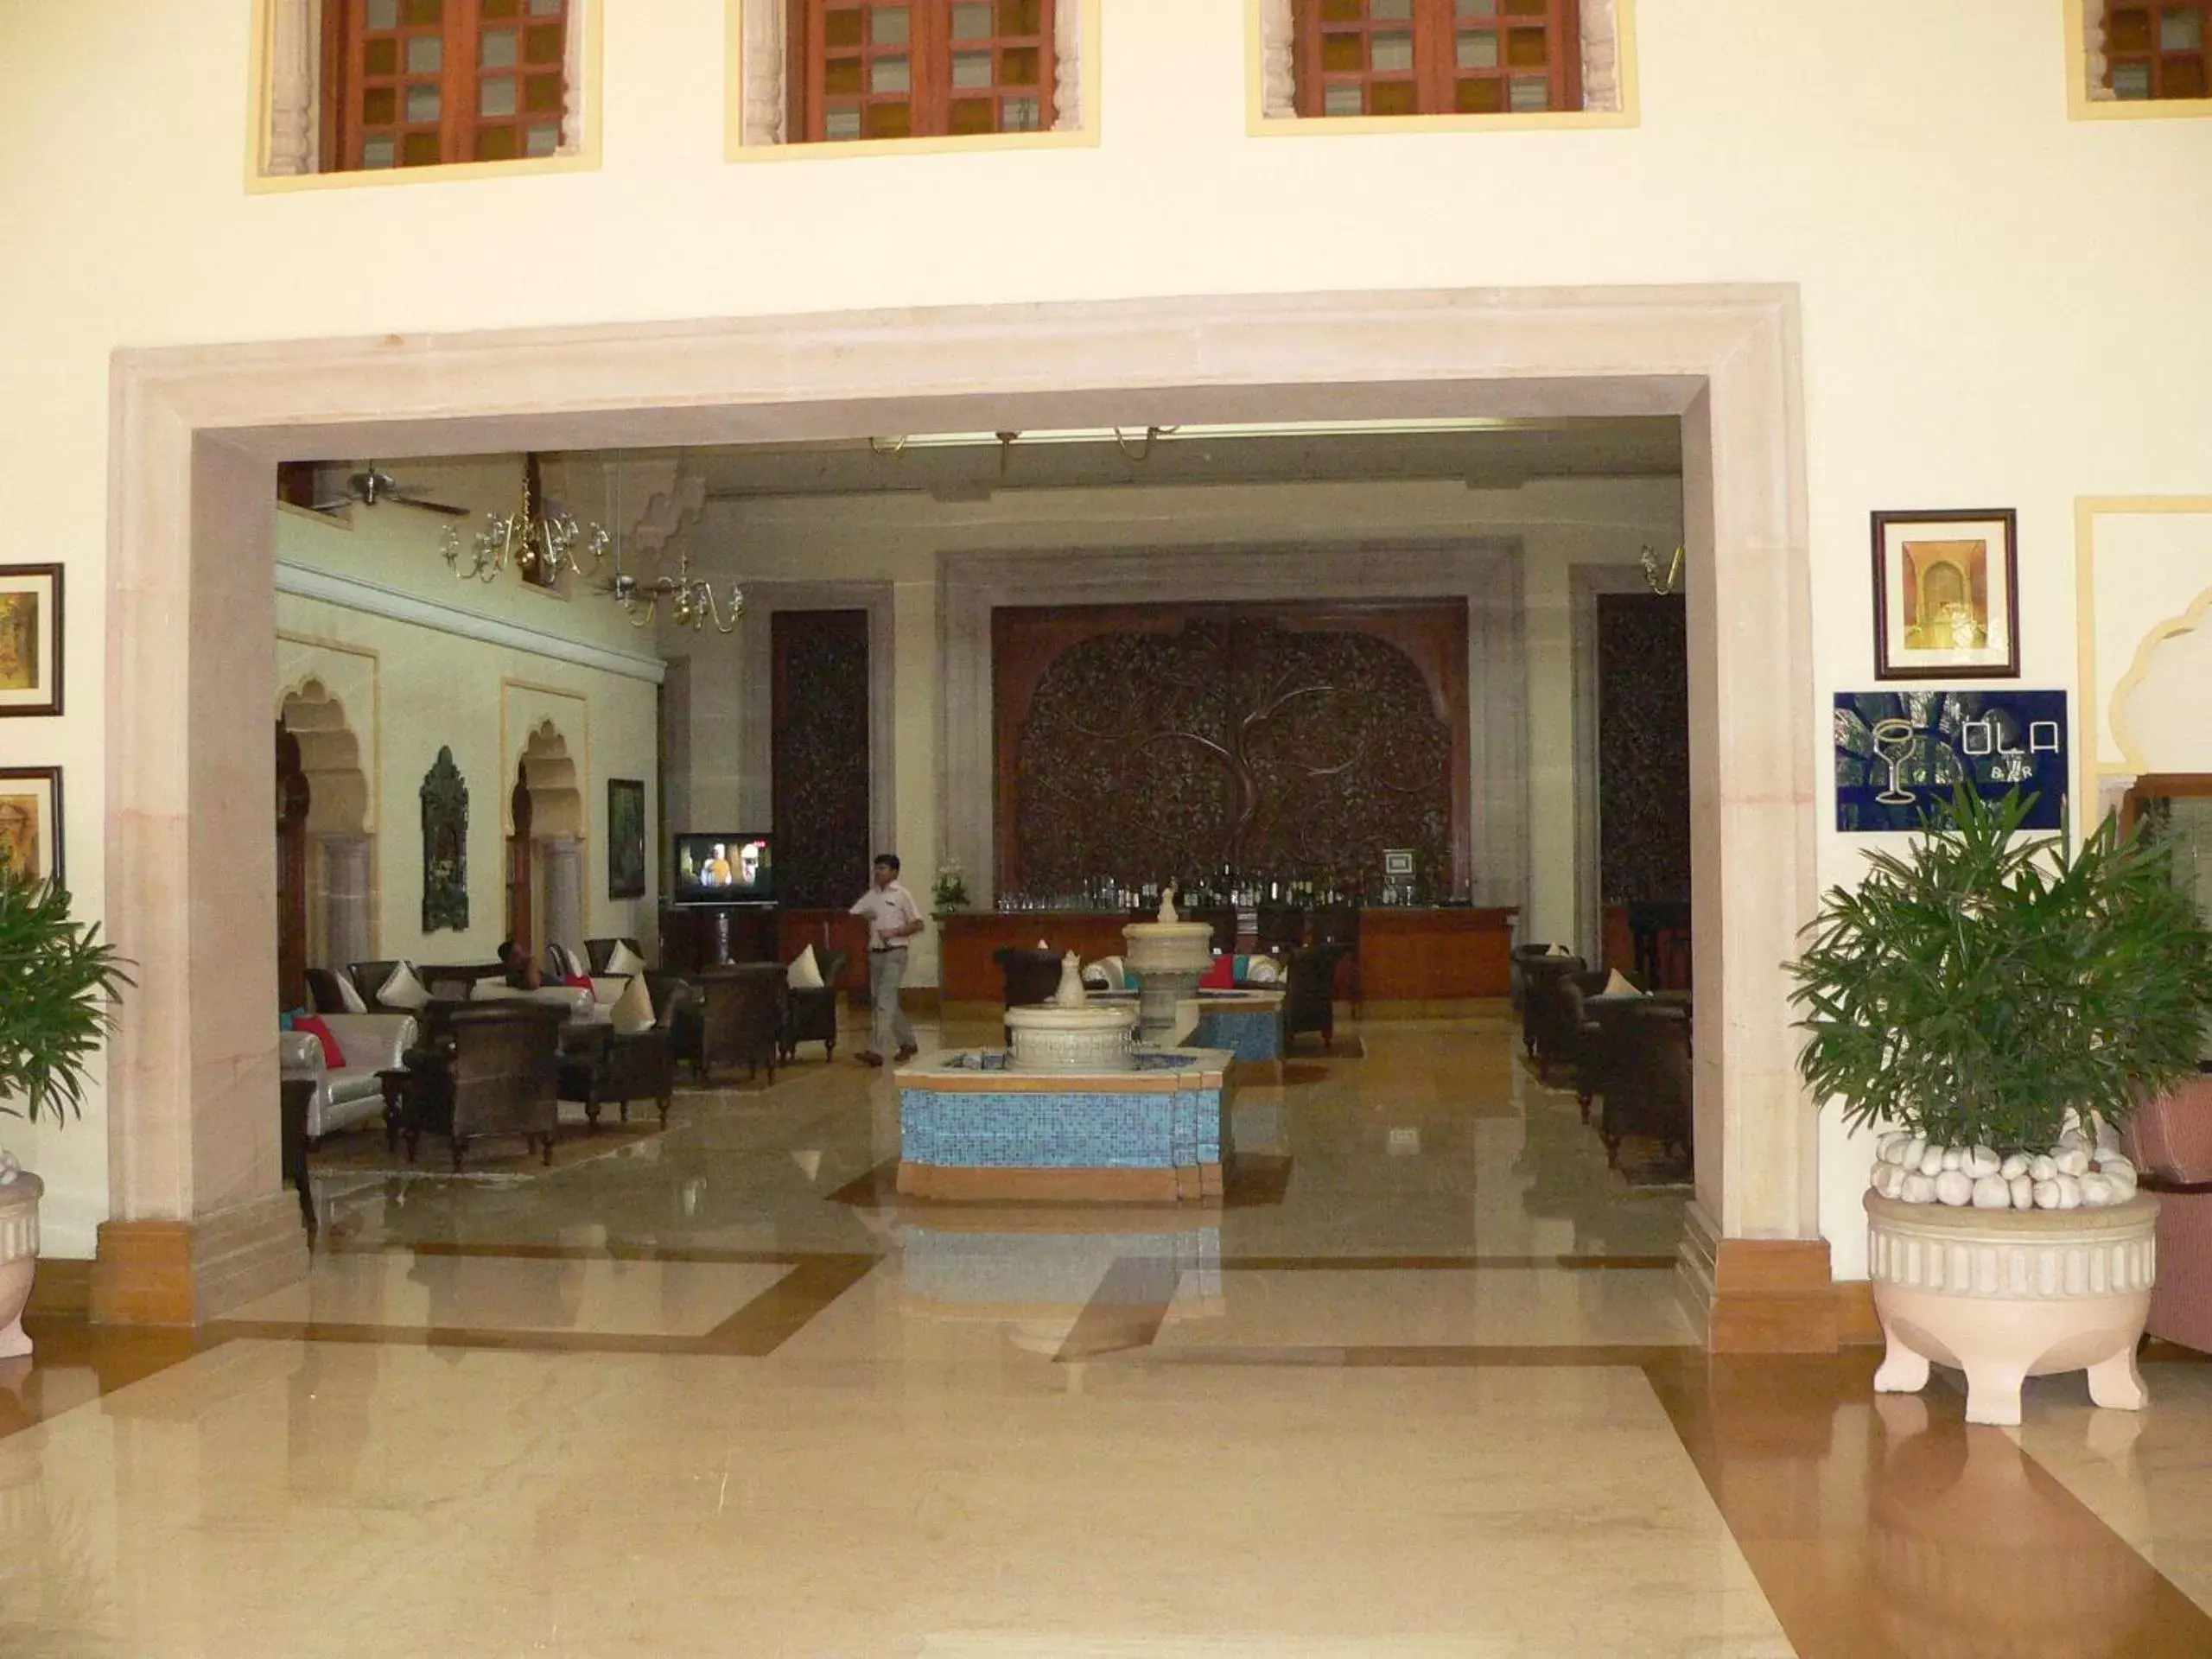 Lobby or reception in Taj Hari Mahal Jodhpur